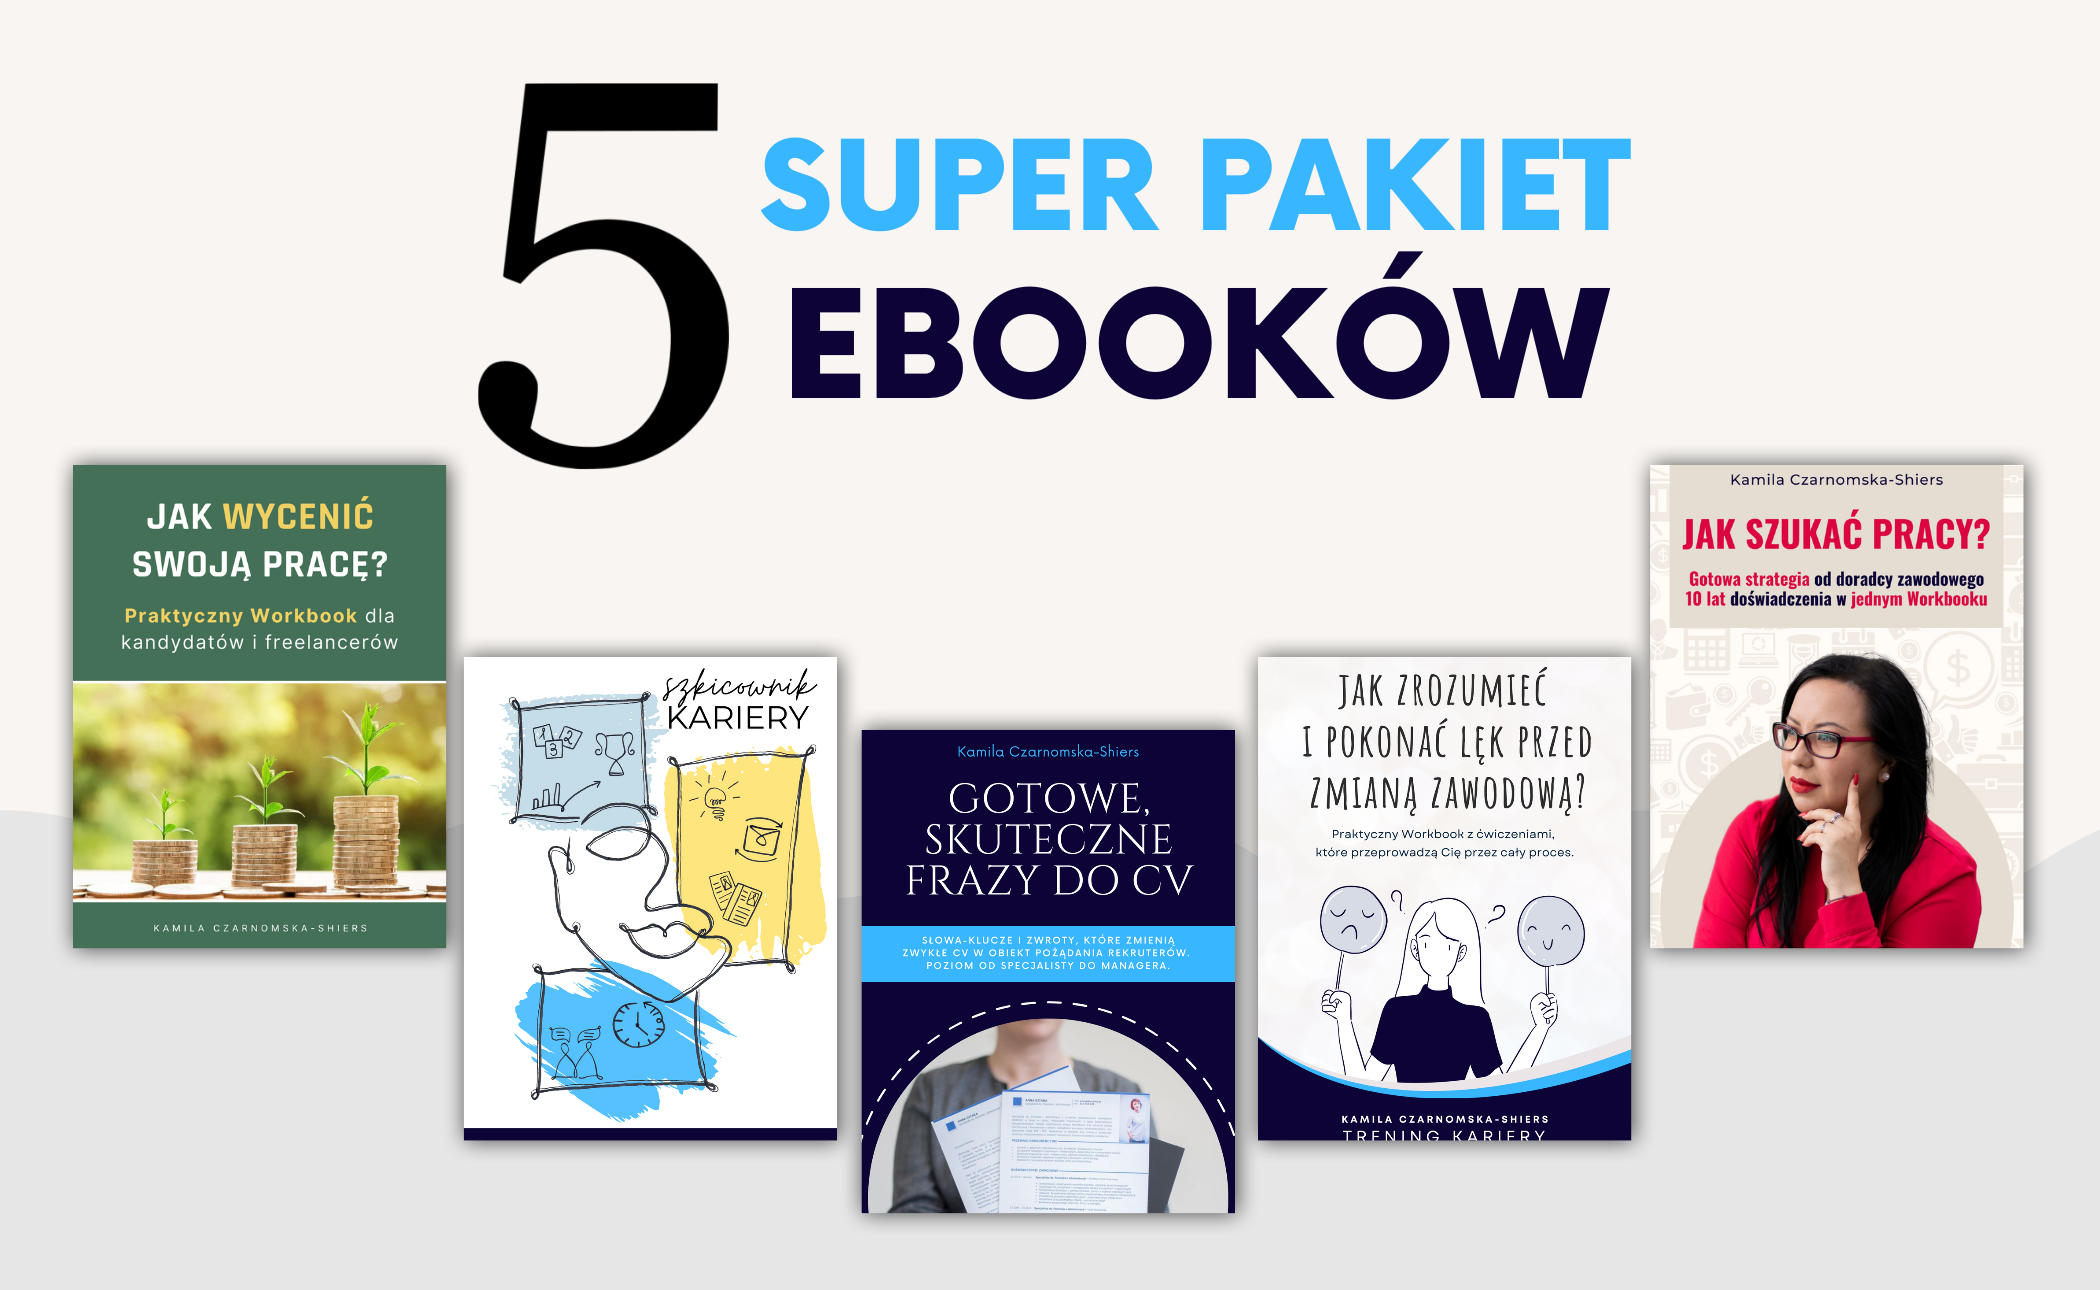 SUPER pakiet 5 ebooków